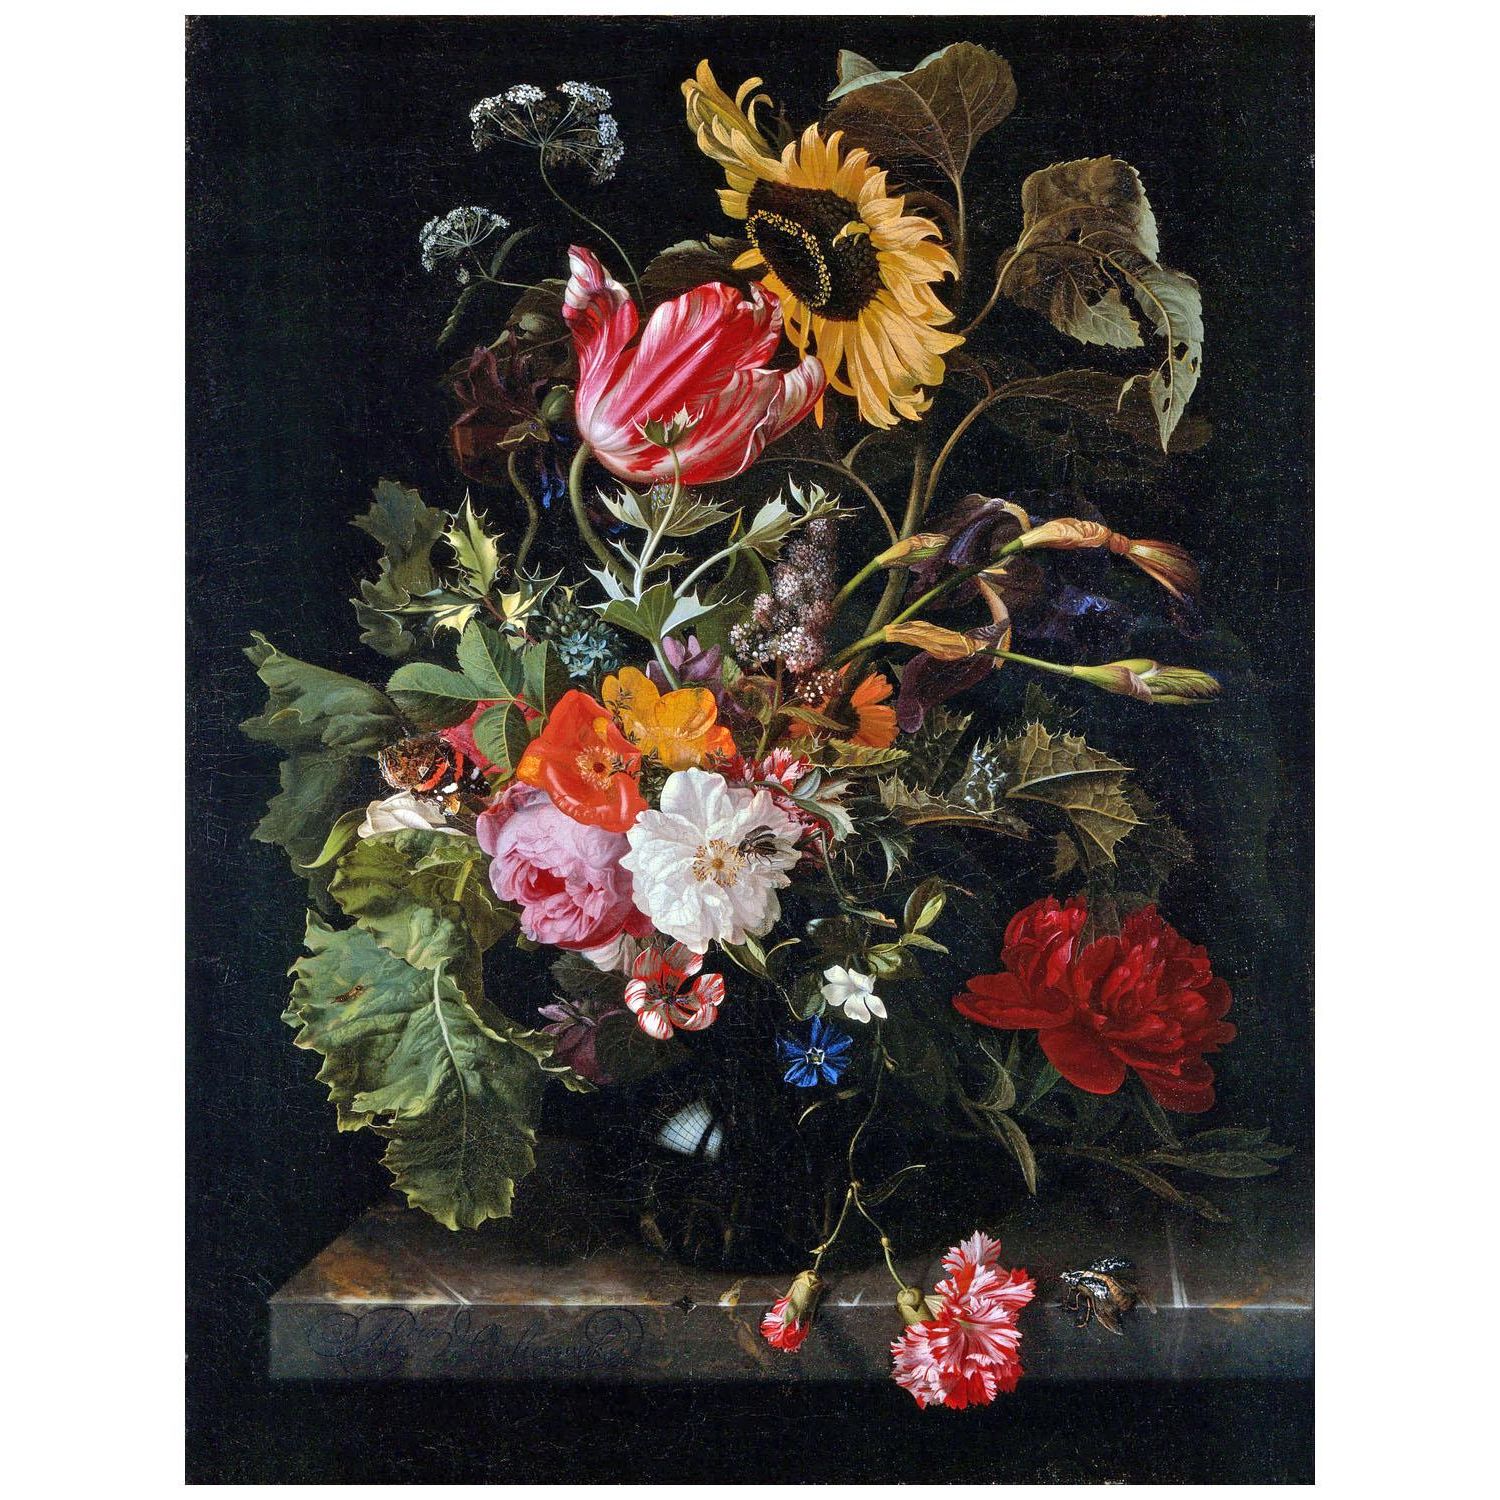 Maria van Oosterwijck. Bouquet of Flowers in a Vase. 1670. Denver Art Museum